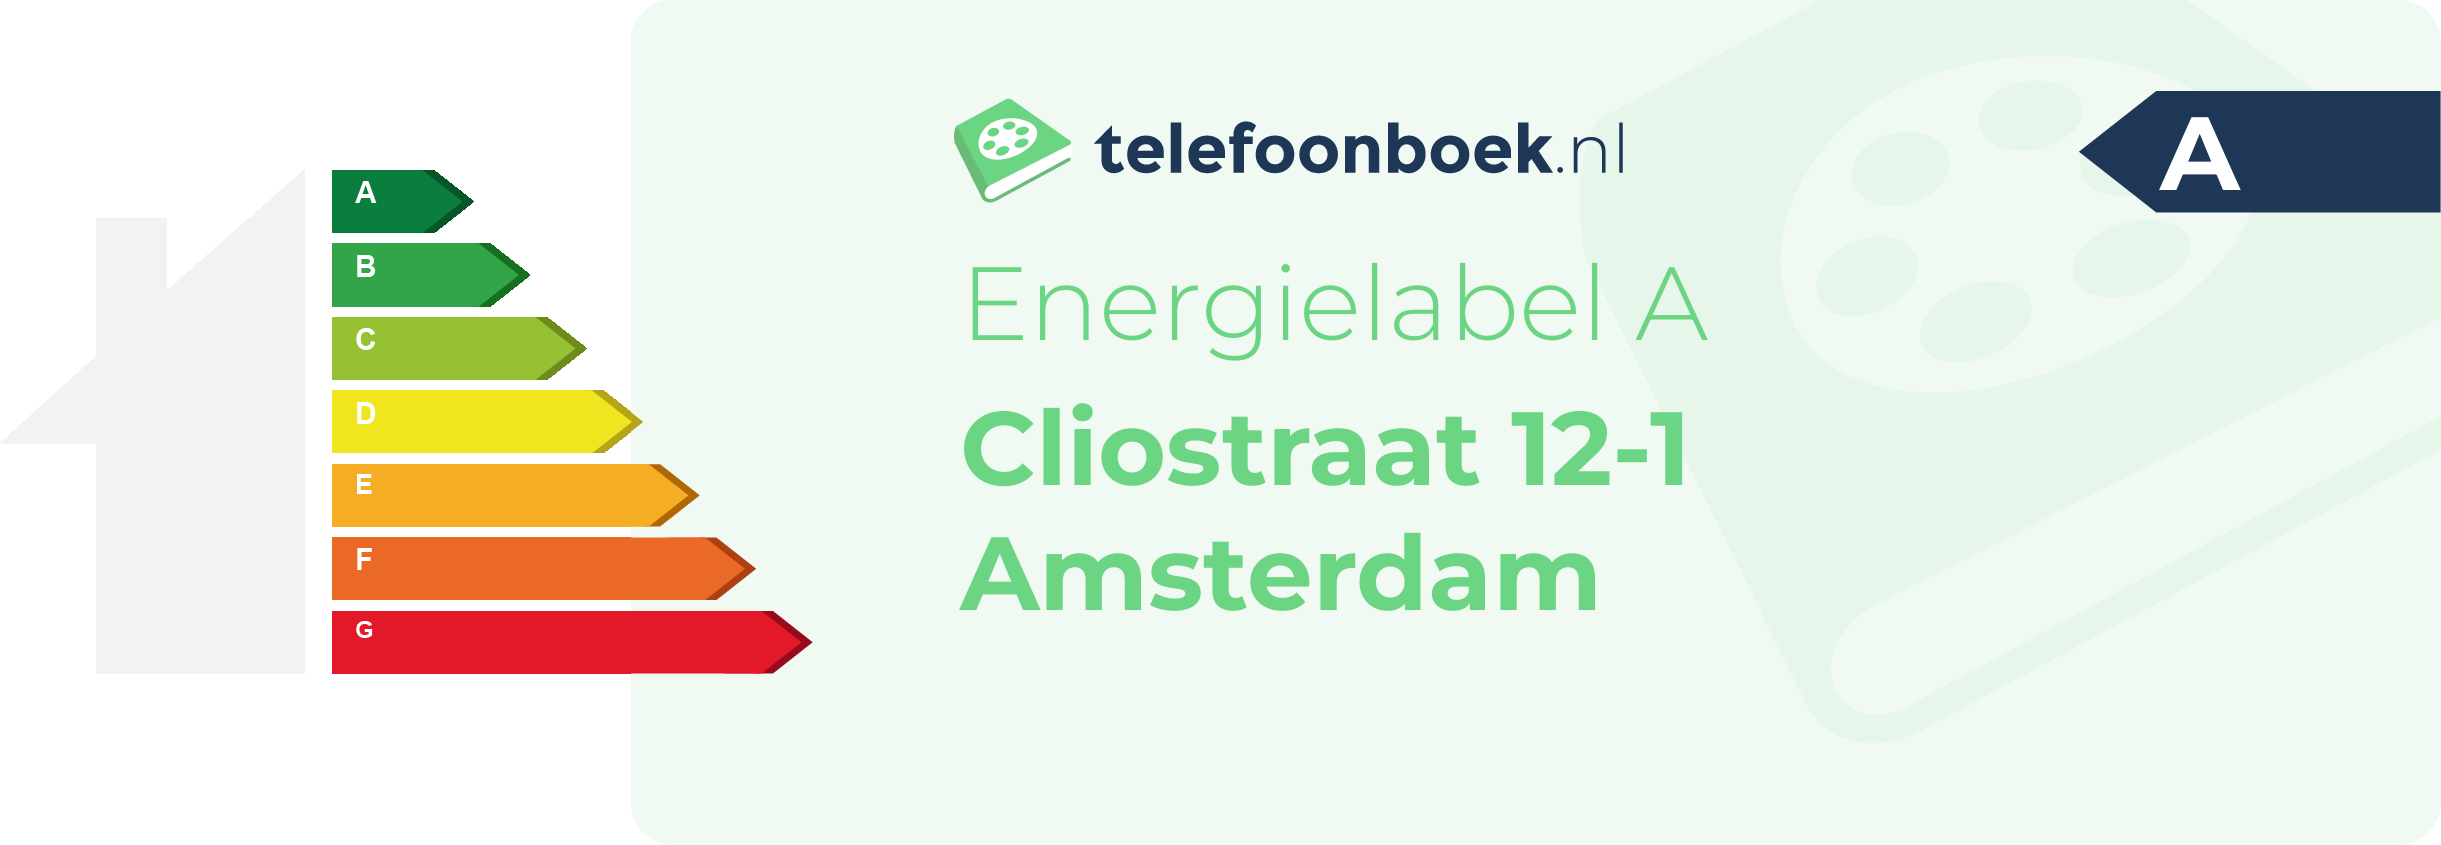 Energielabel Cliostraat 12-1 Amsterdam